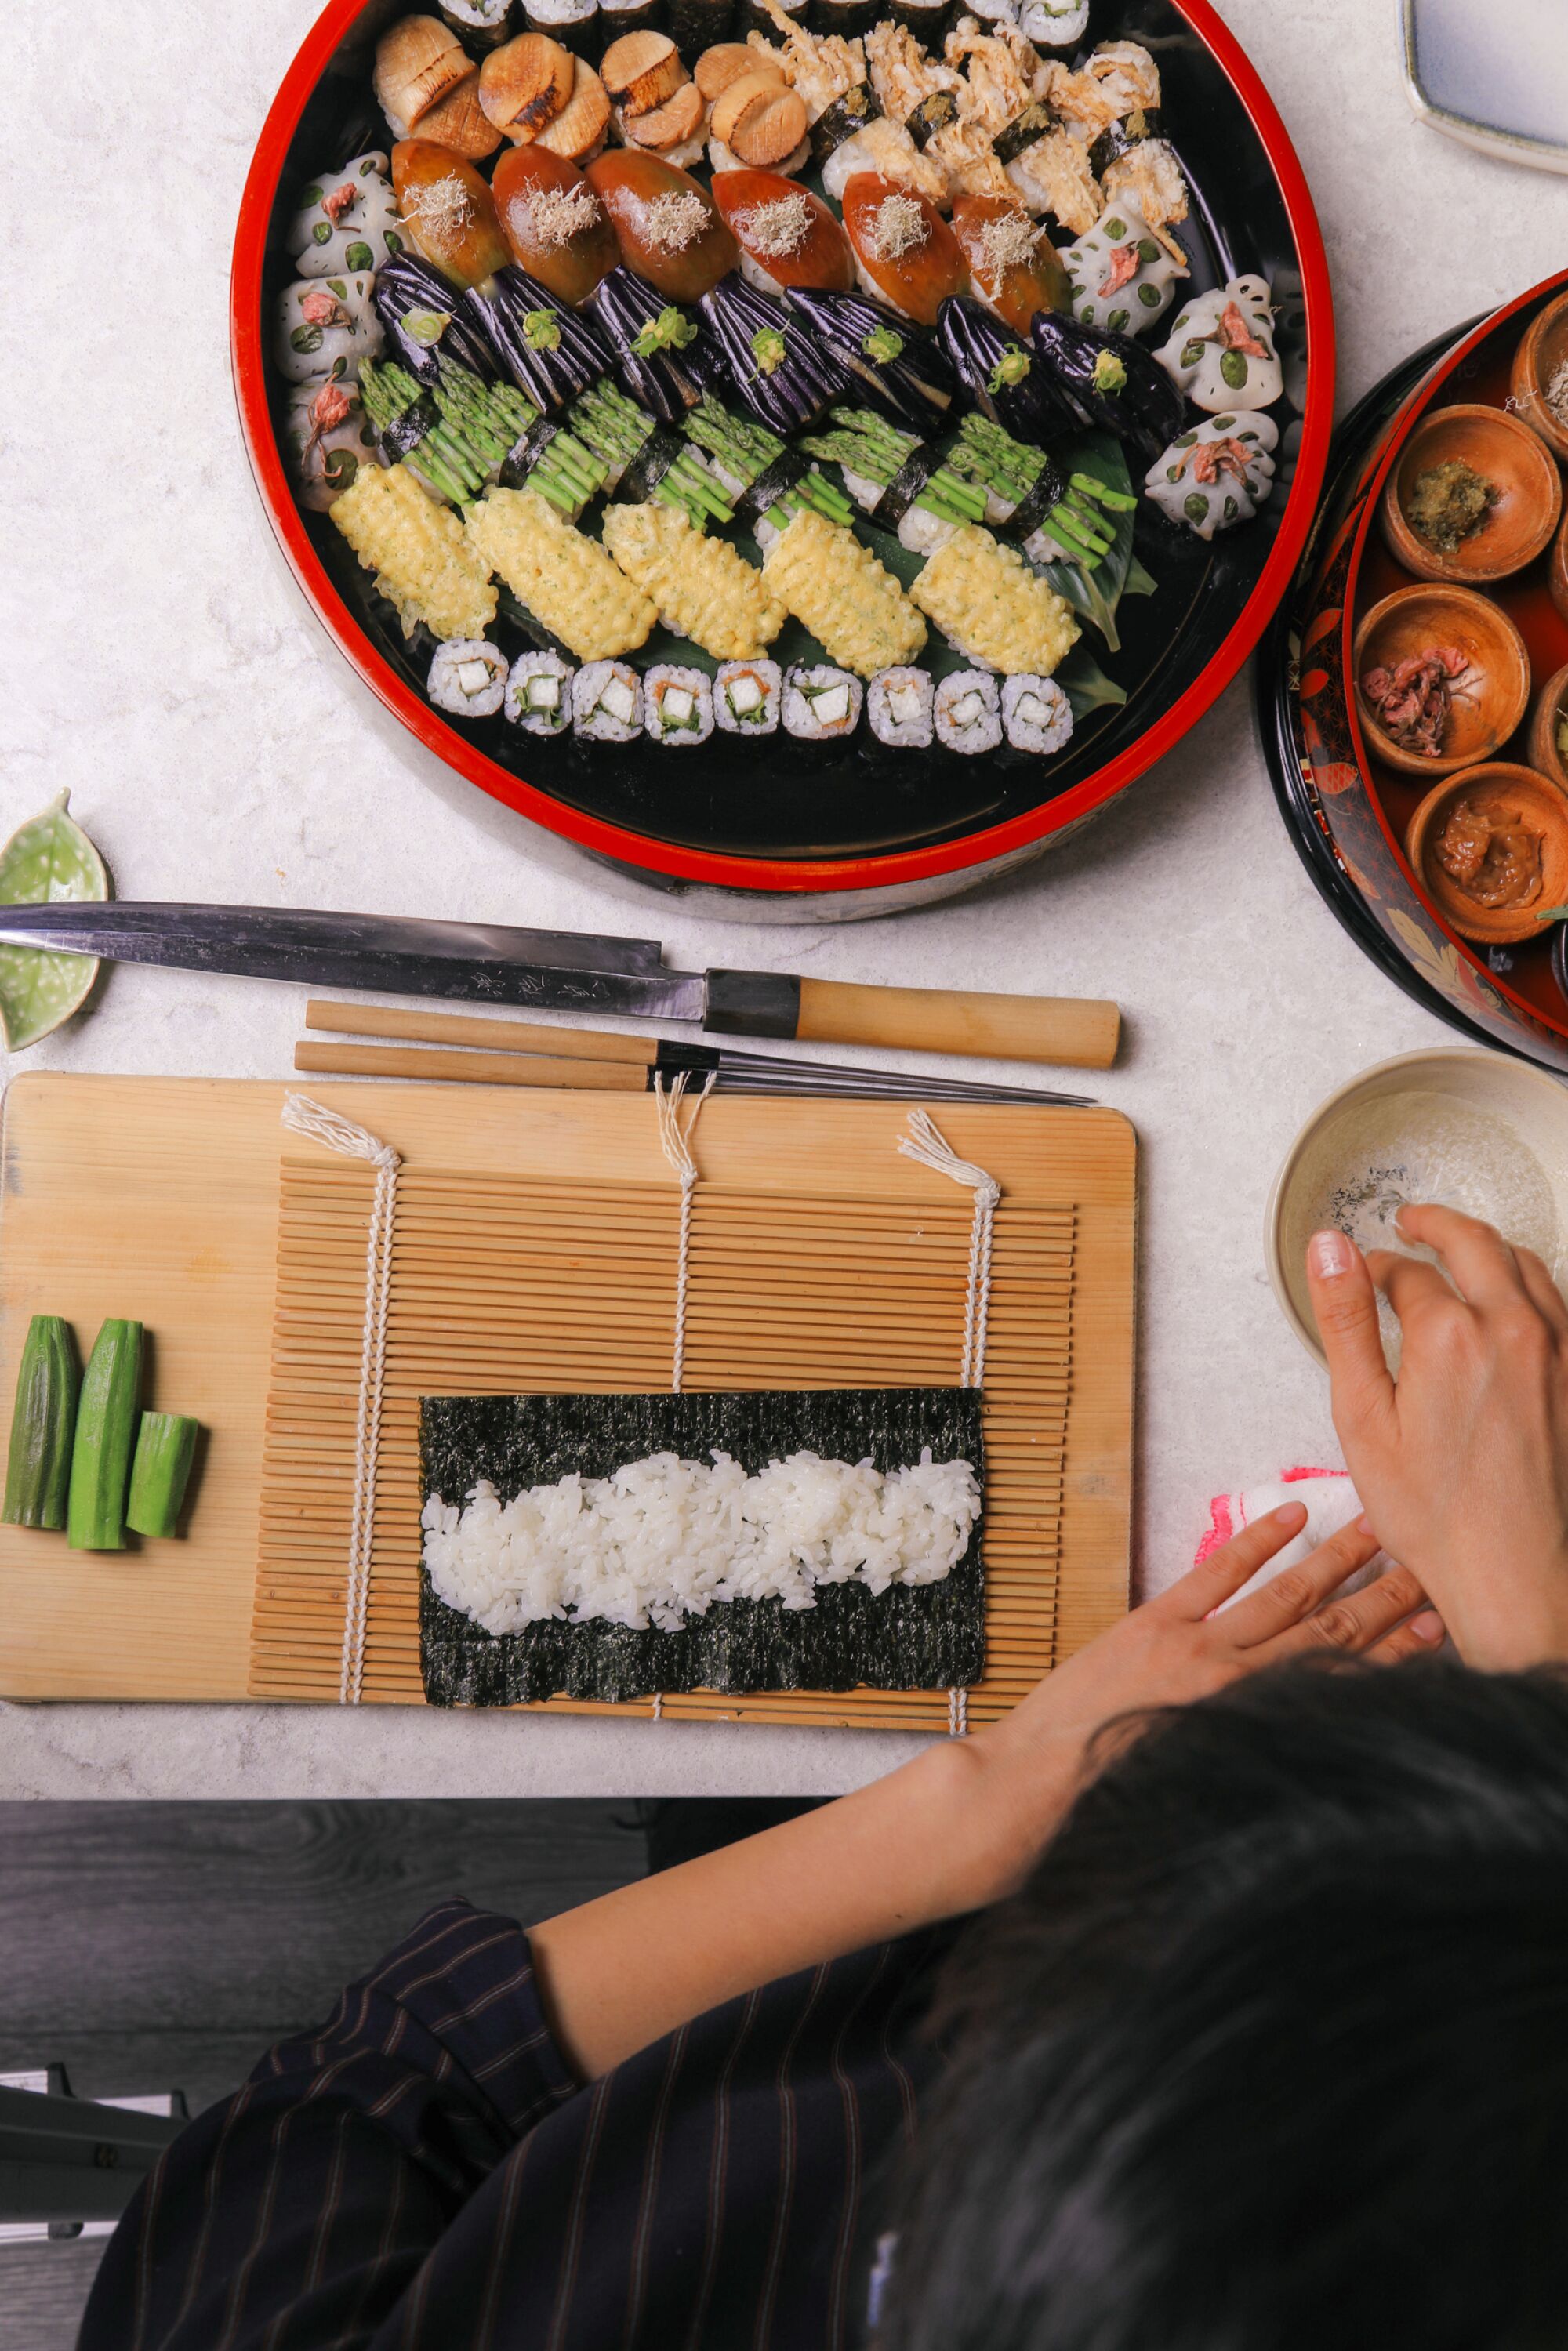 Hasebe bereitet in der Testküche der LA Times eine vegane Sushi-Platte zu.